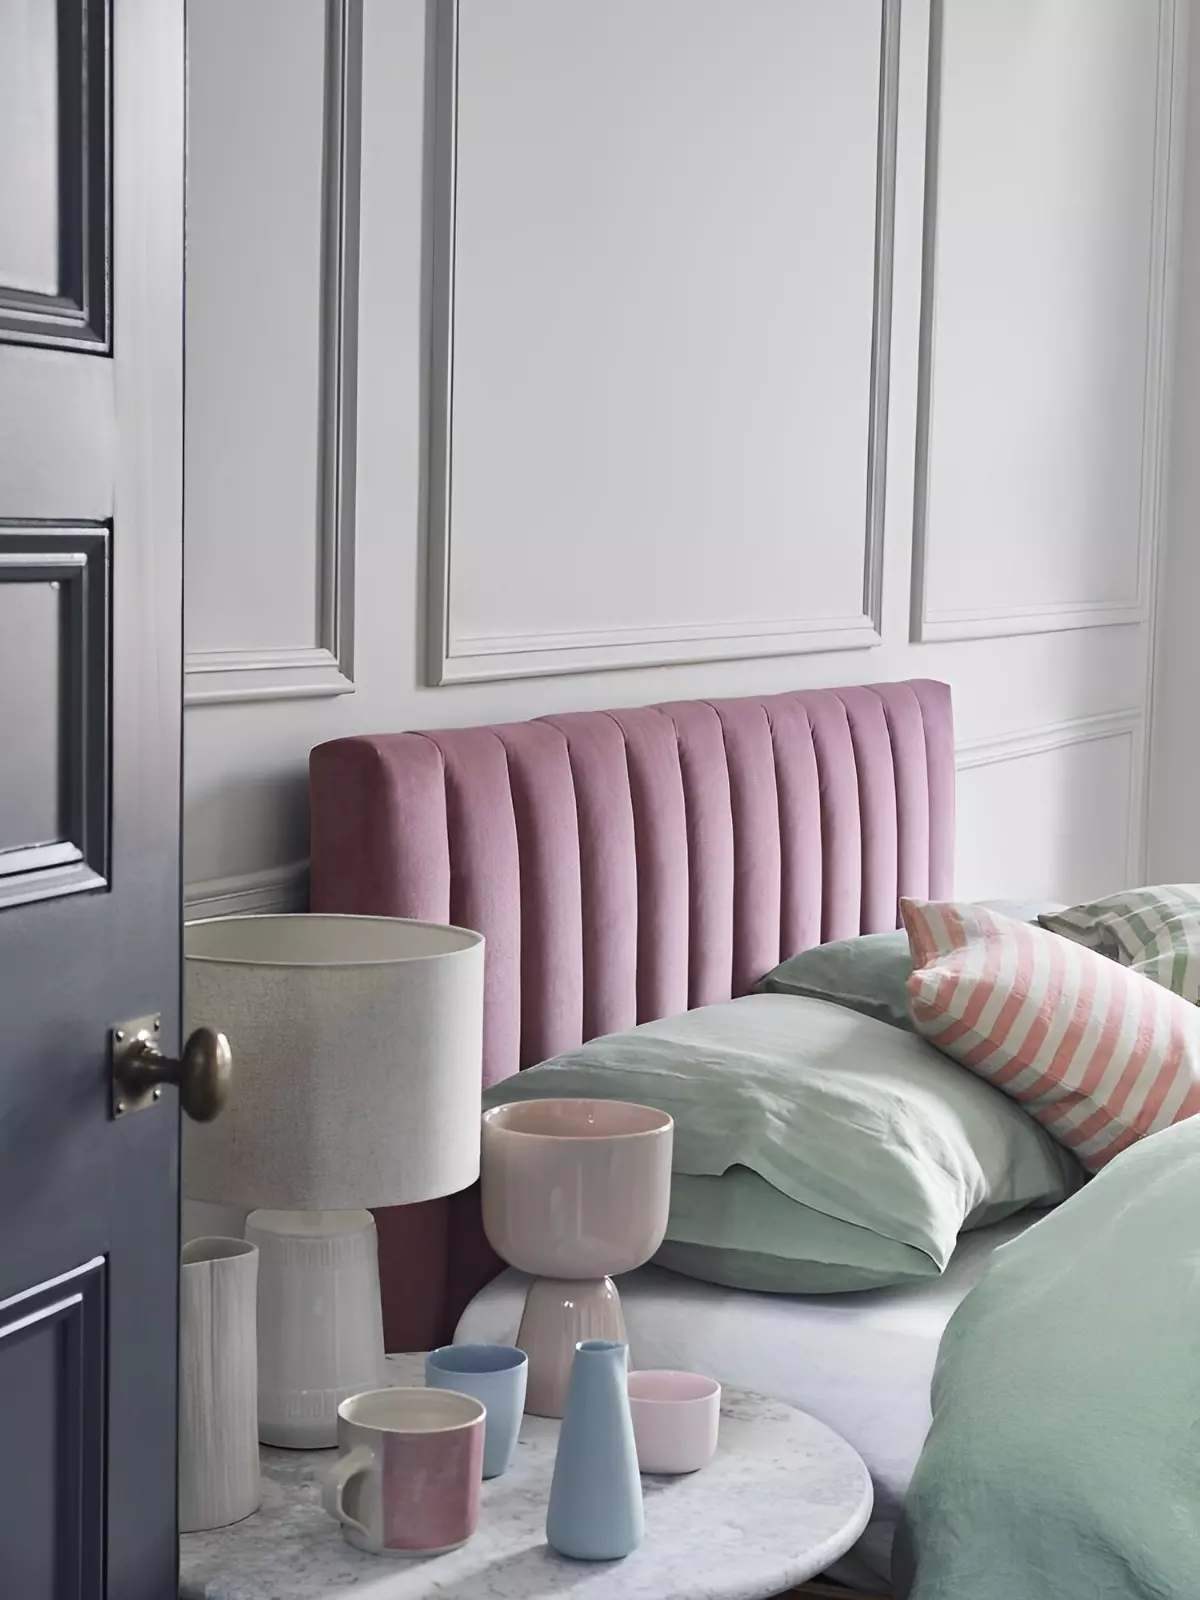 couleurs douces et pastels dans une chambre sur fond gris claire